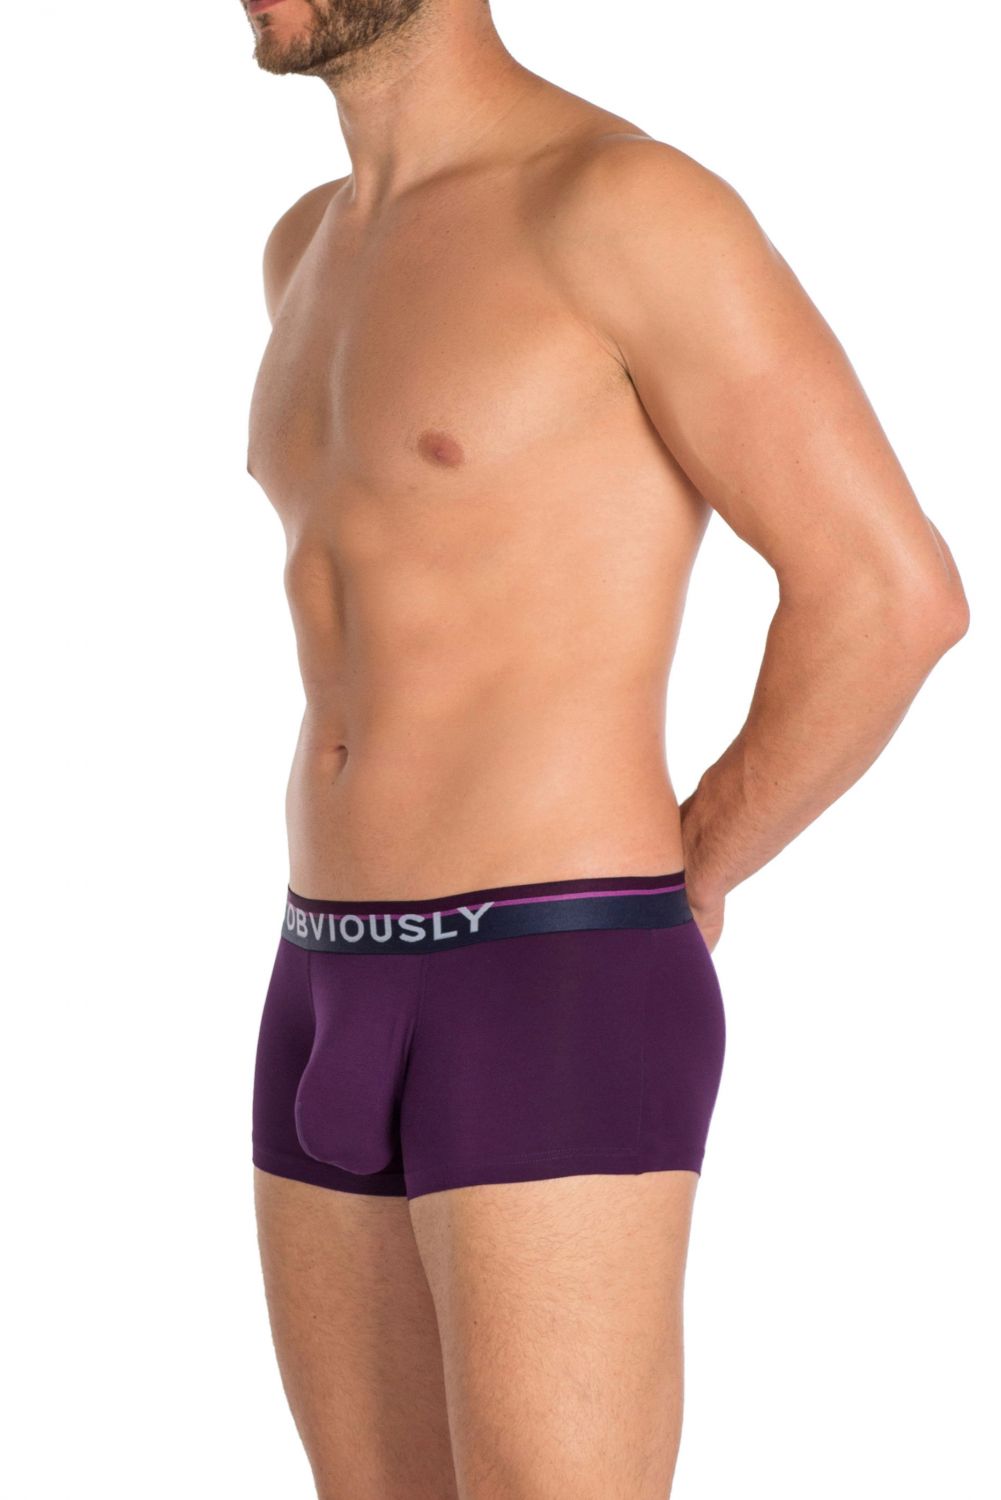 Obviously PrimeMan Hipster Brief A04 Purple Mens Underwear